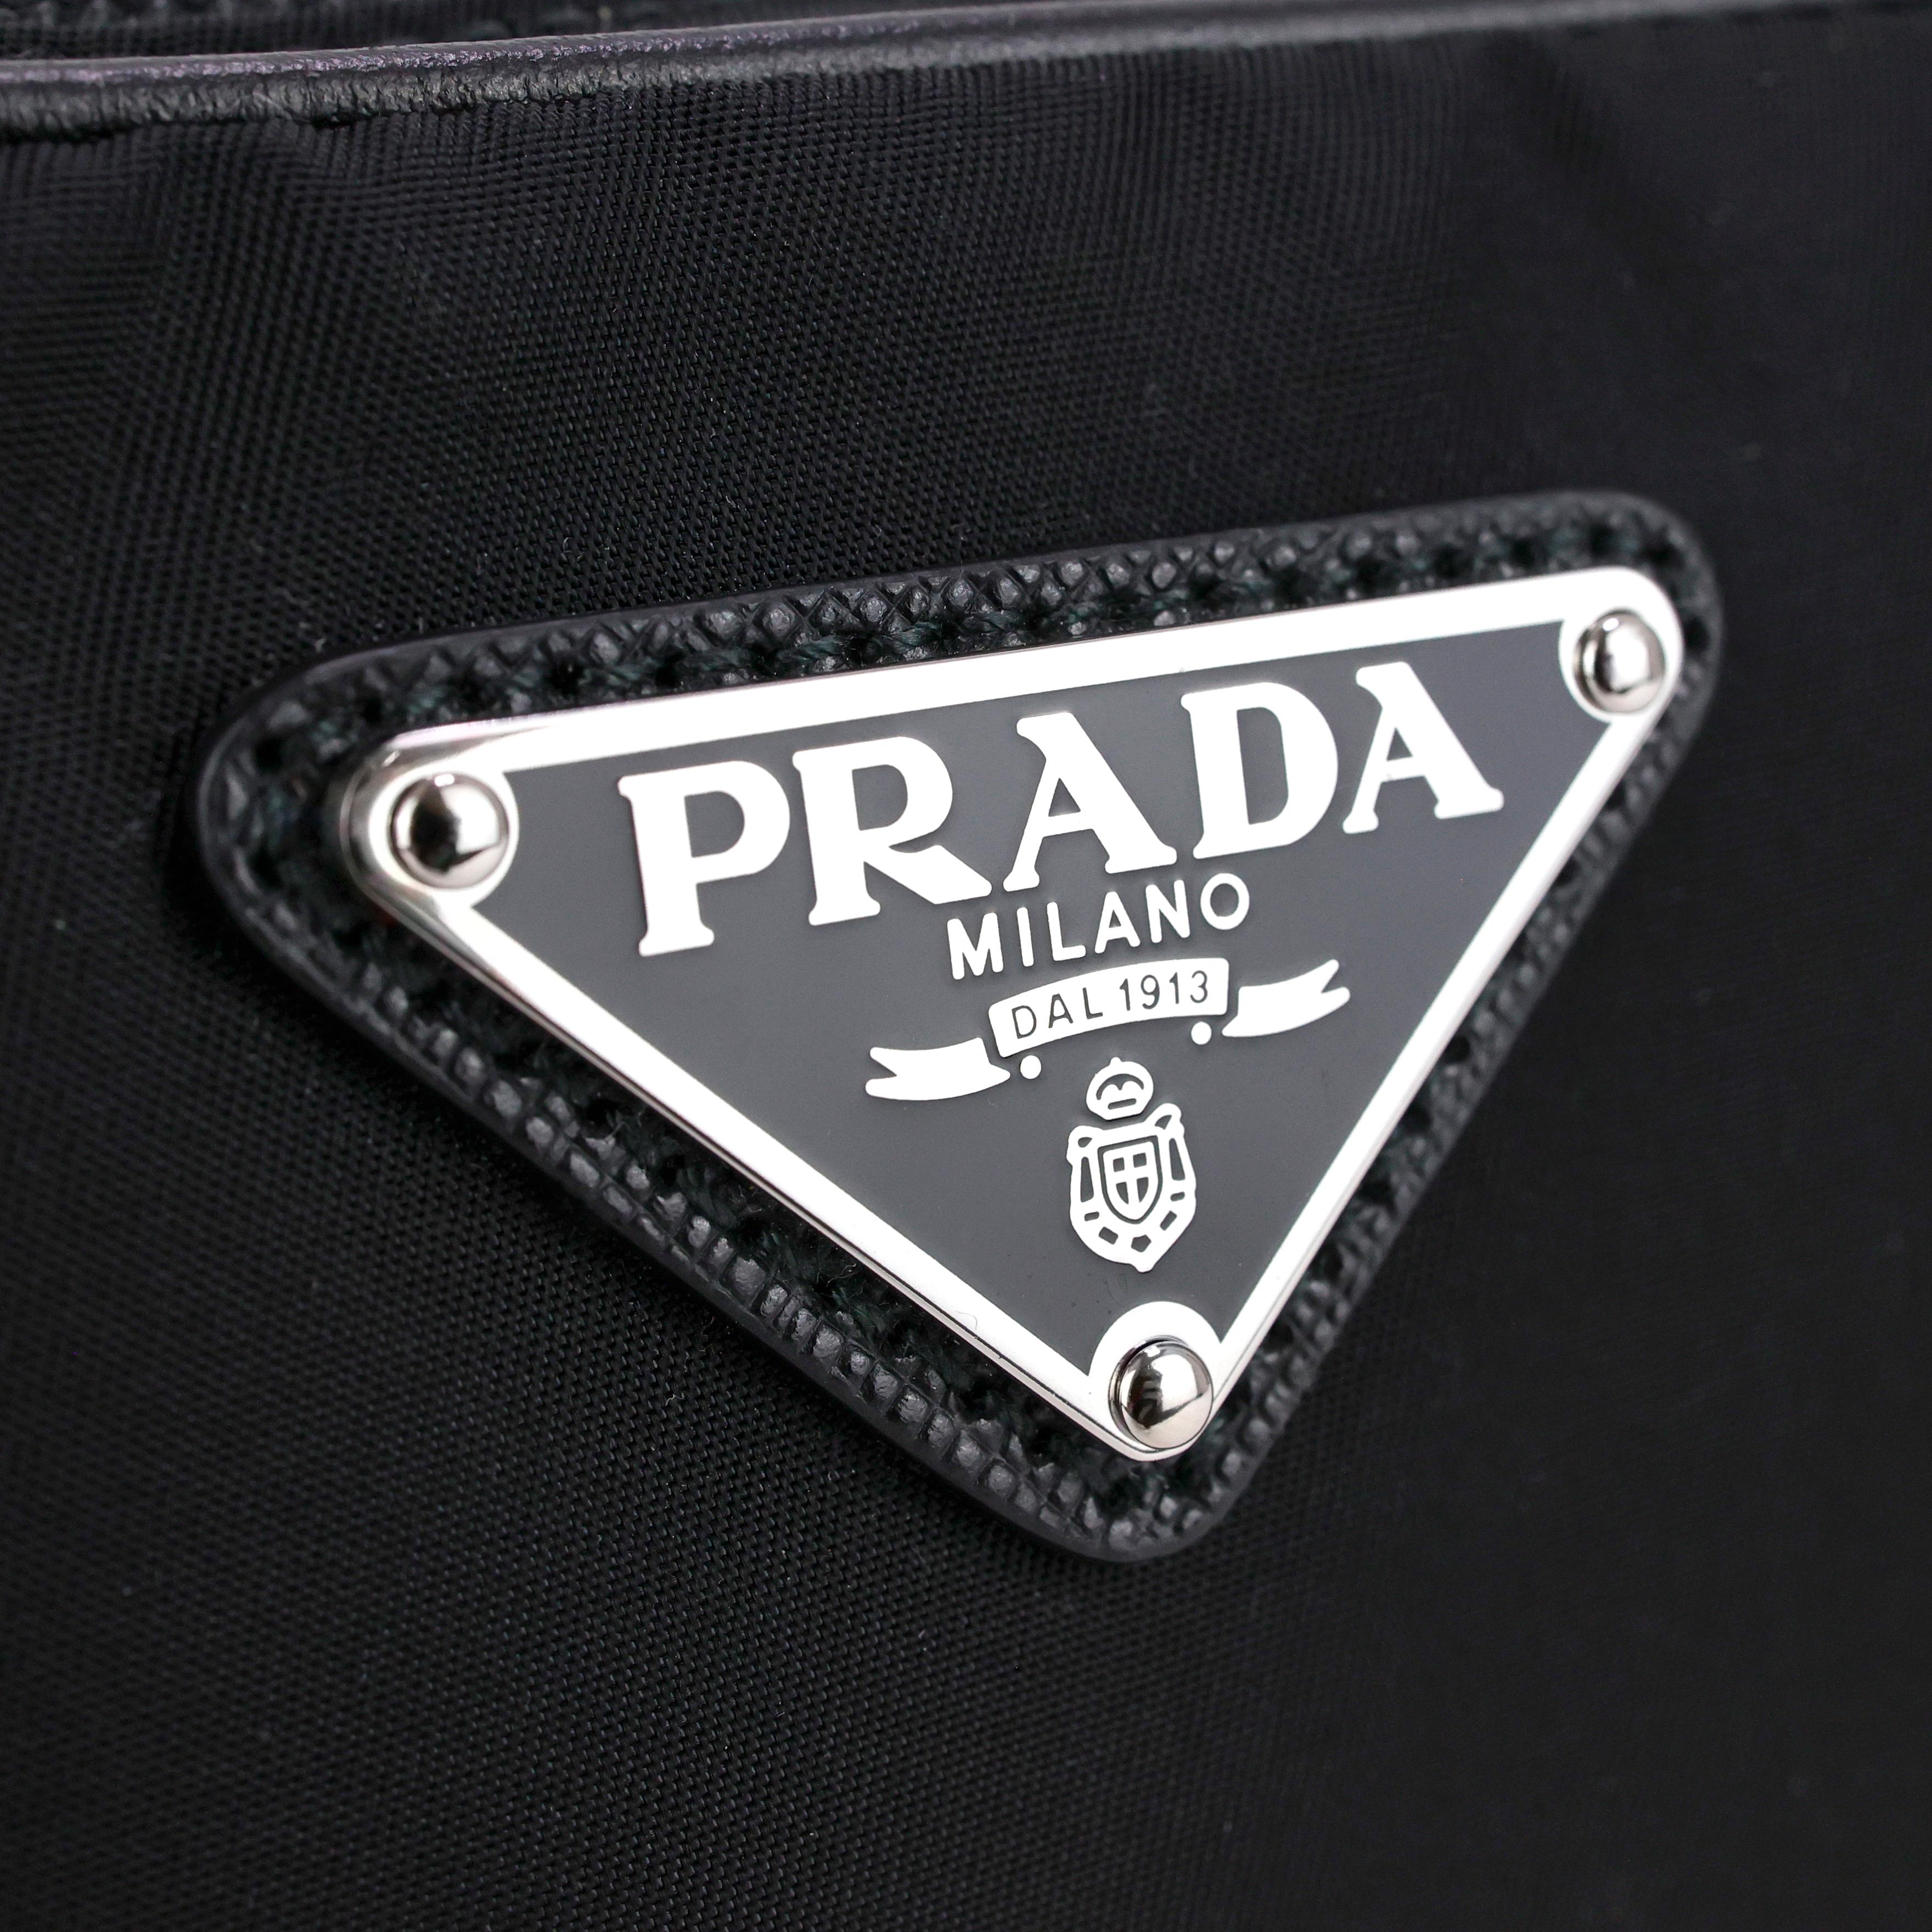 Prada Nylon Beltbag In Excellent Condition For Sale In Bressanone, IT